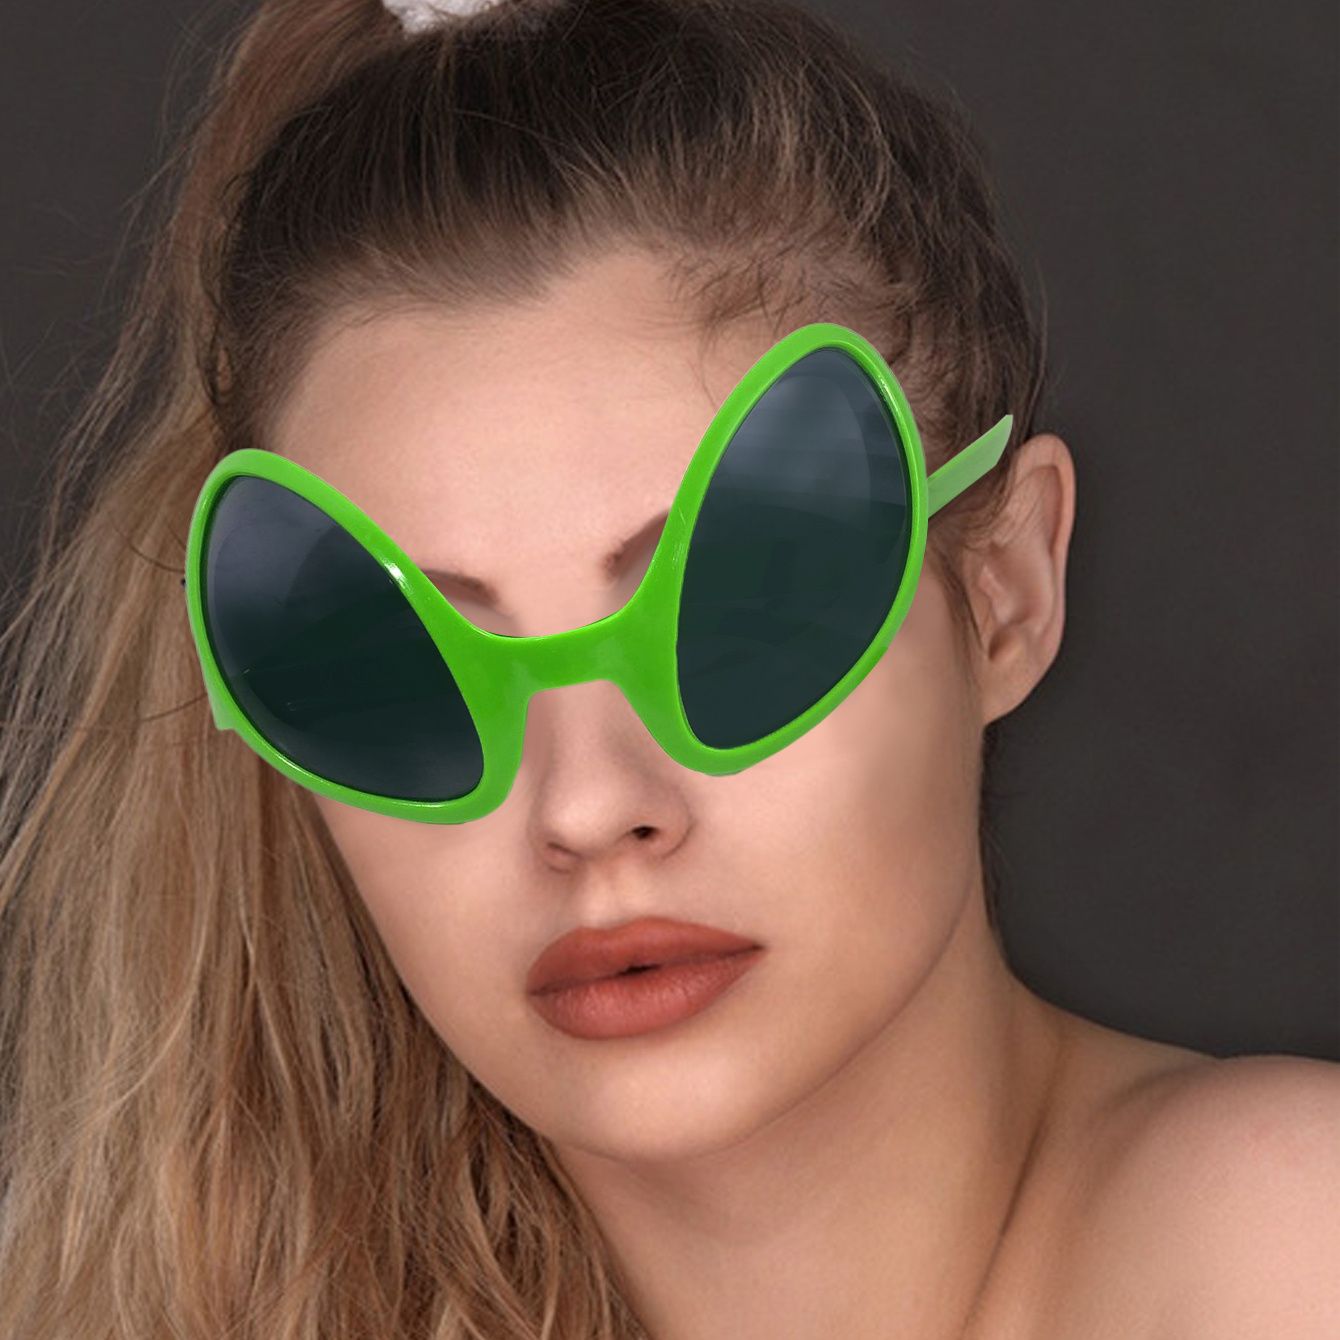 Gafas alien para adulto: Accesorios,y disfraces originales baratos - Vegaoo